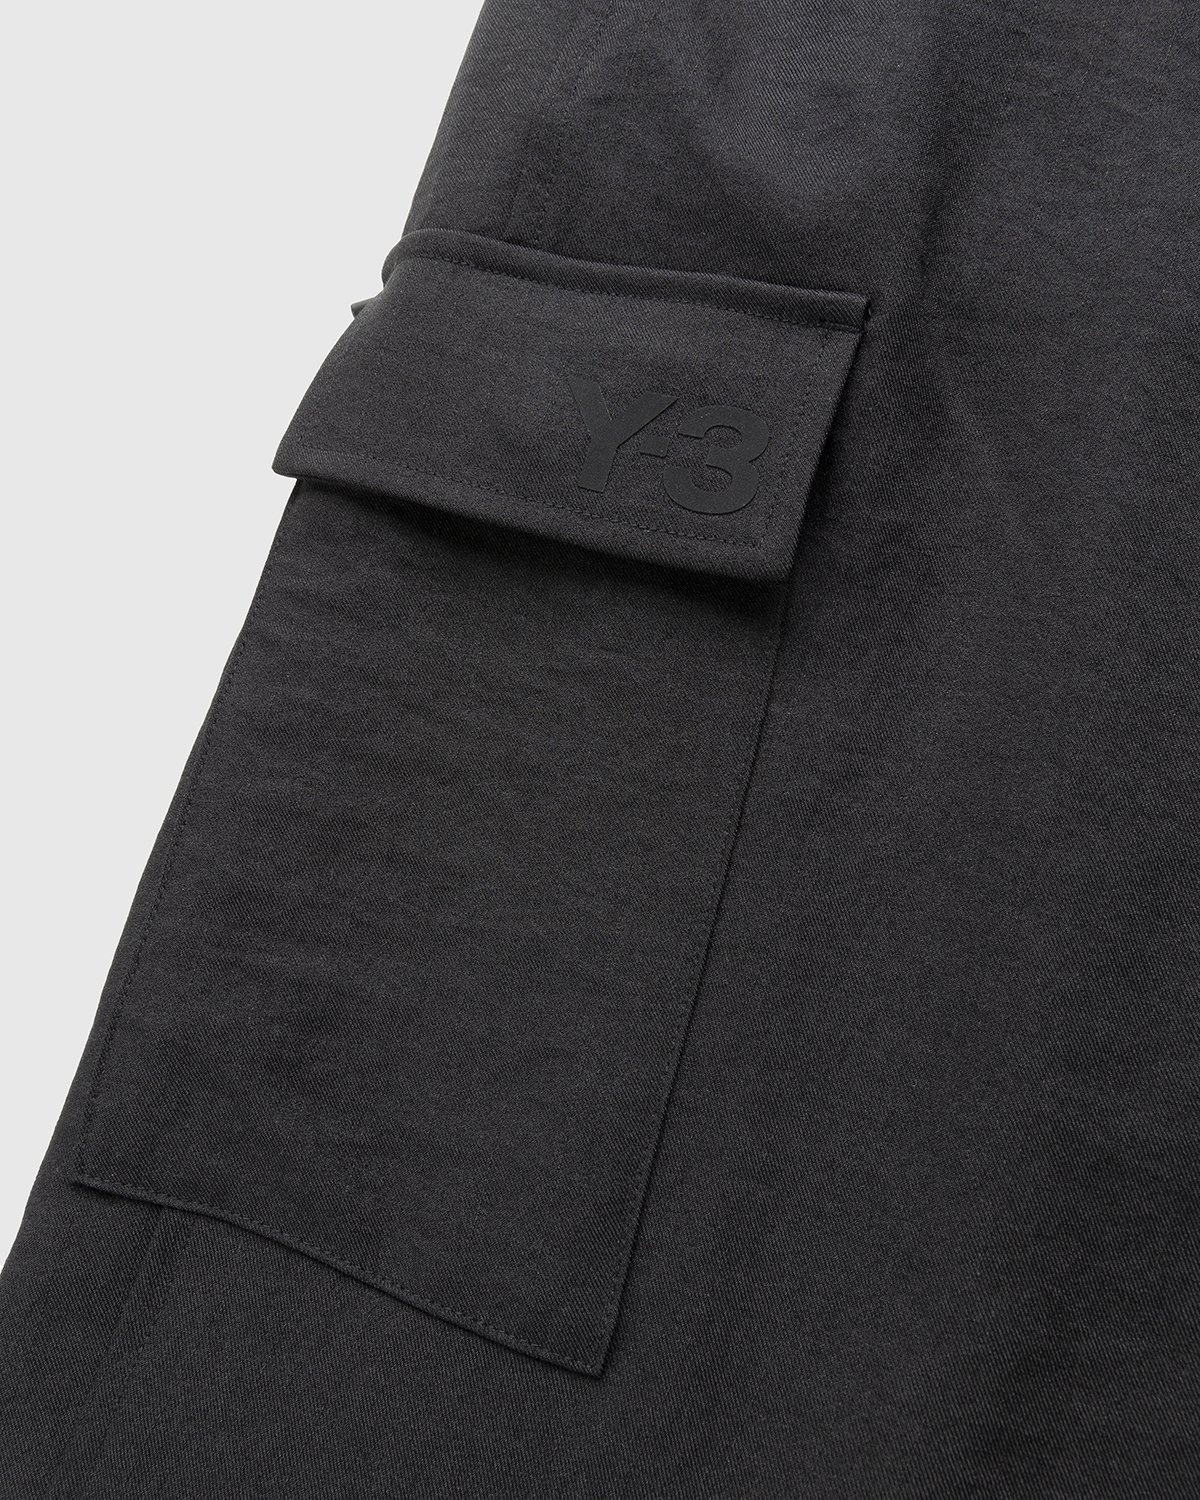 Y-3 – Classic Sport Uniform Cargo Pants Black - Pants - Black - Image 5